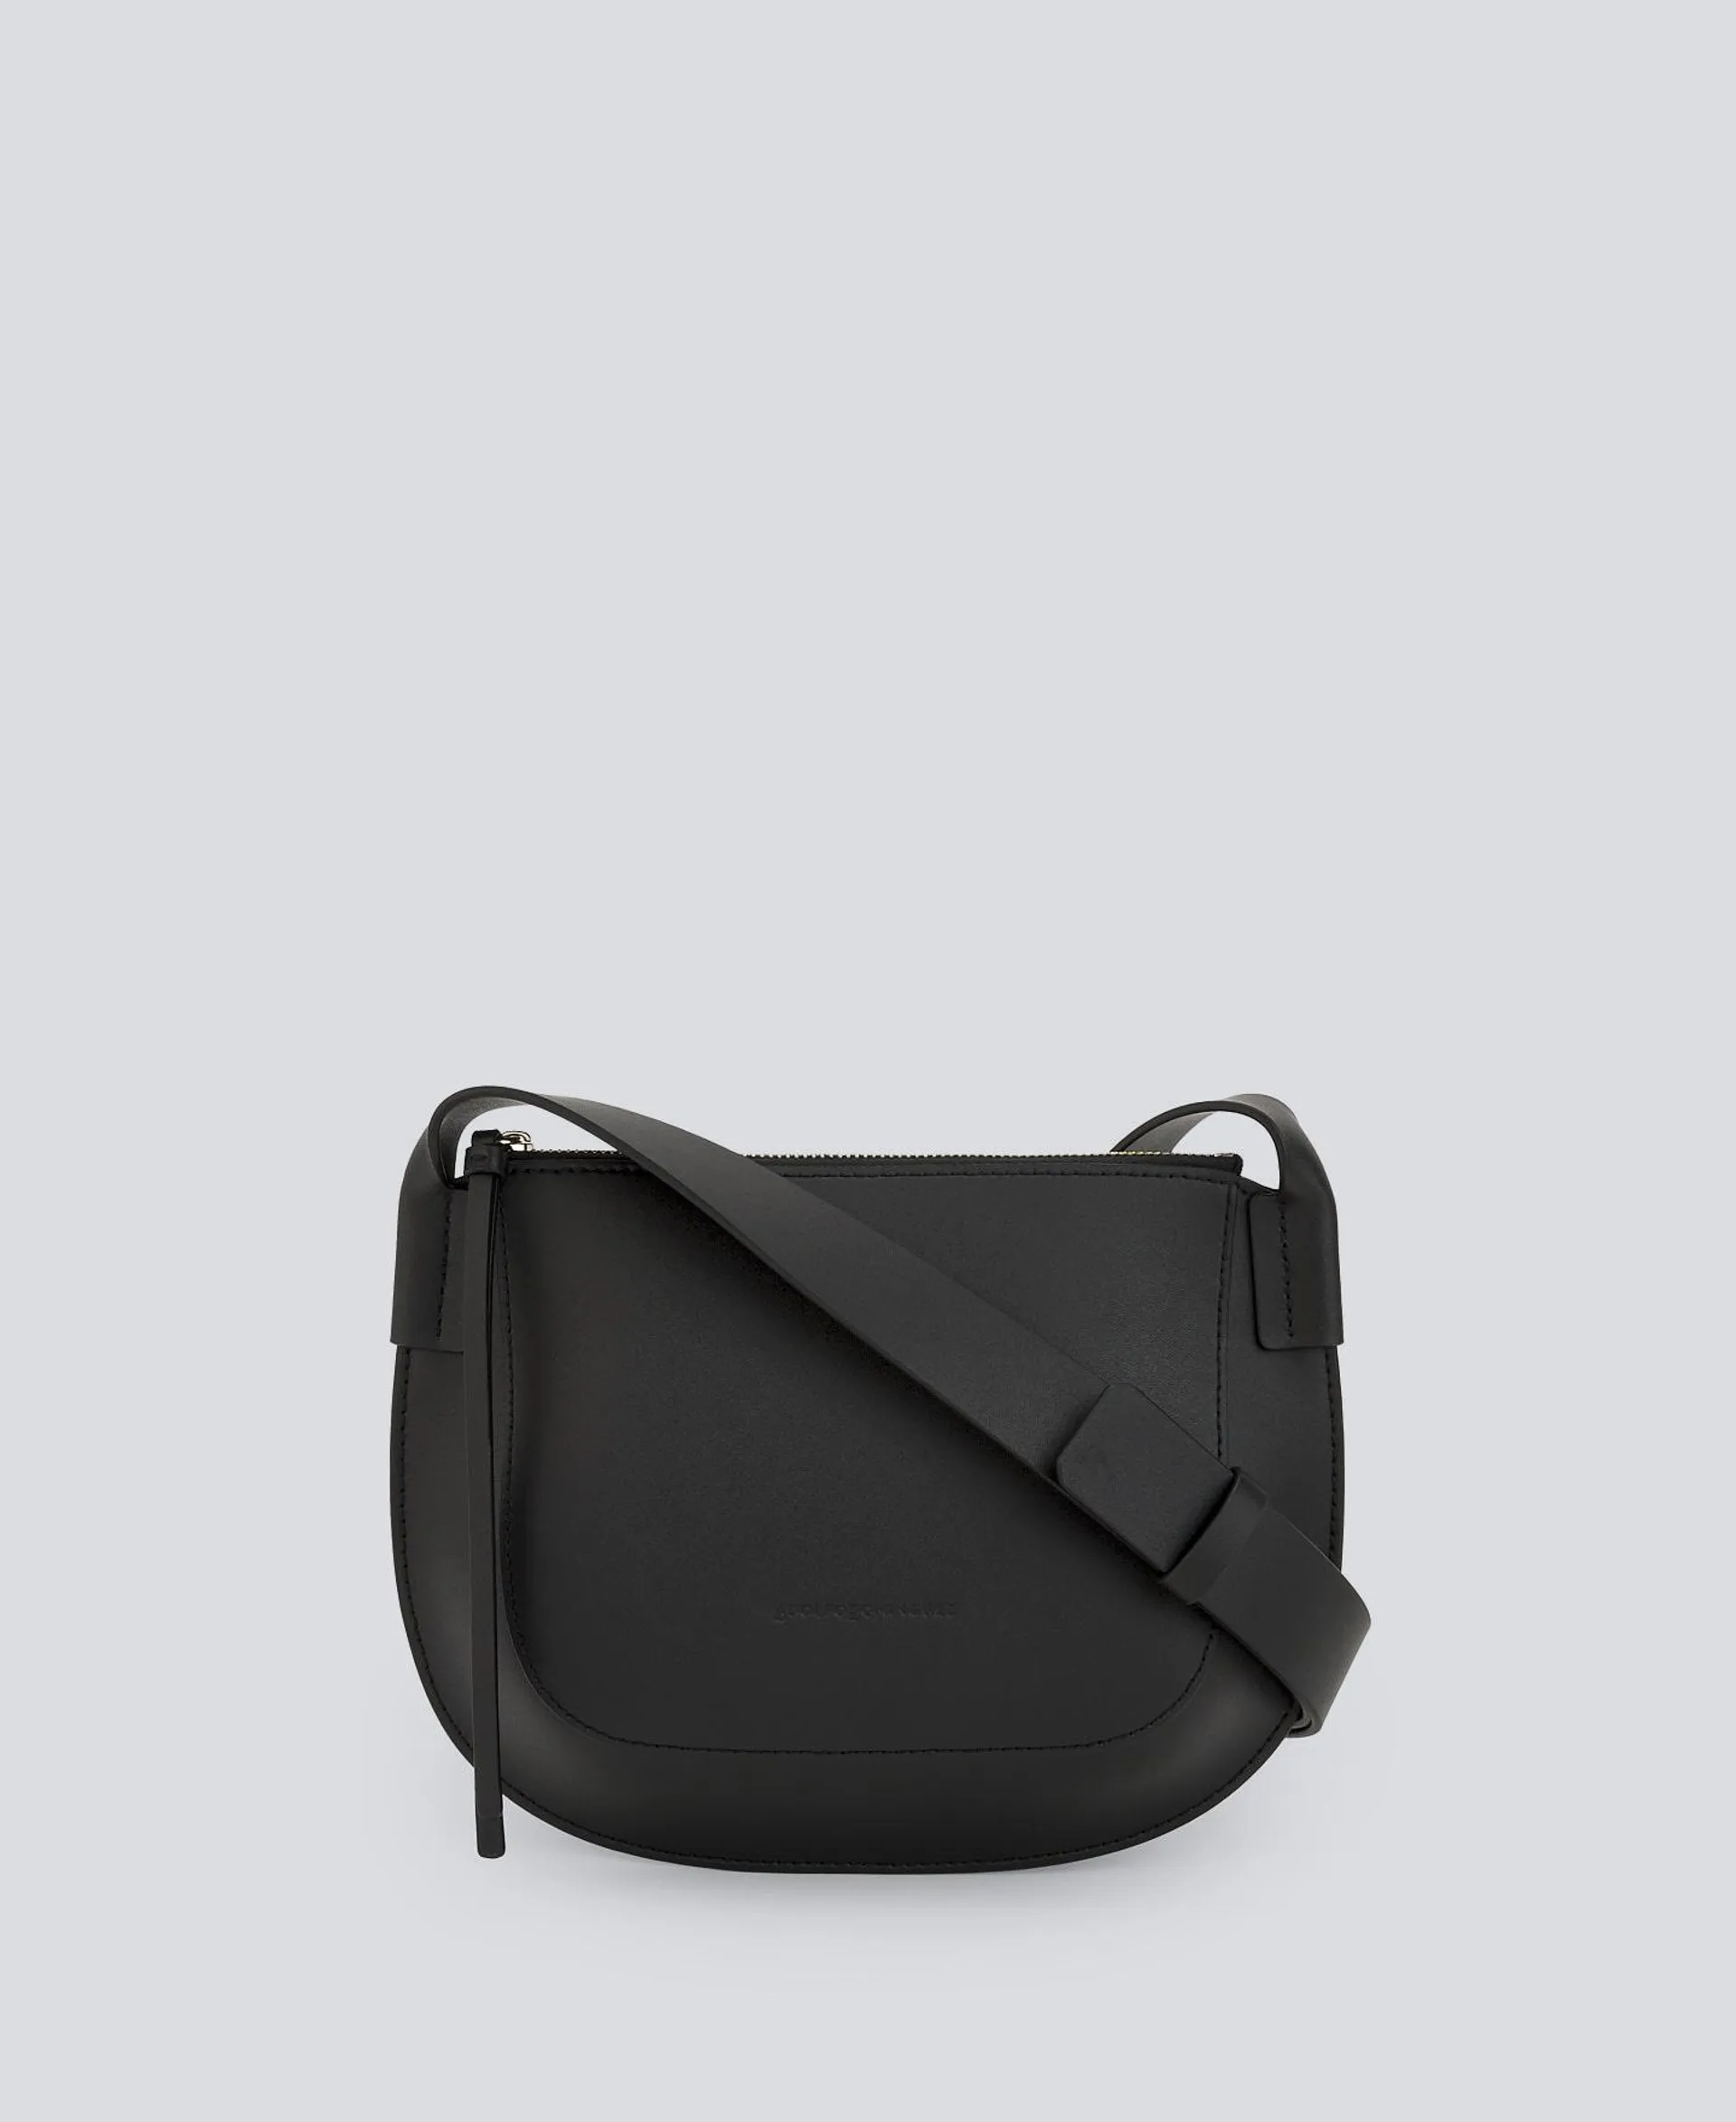 Black leather shoulder bag woman